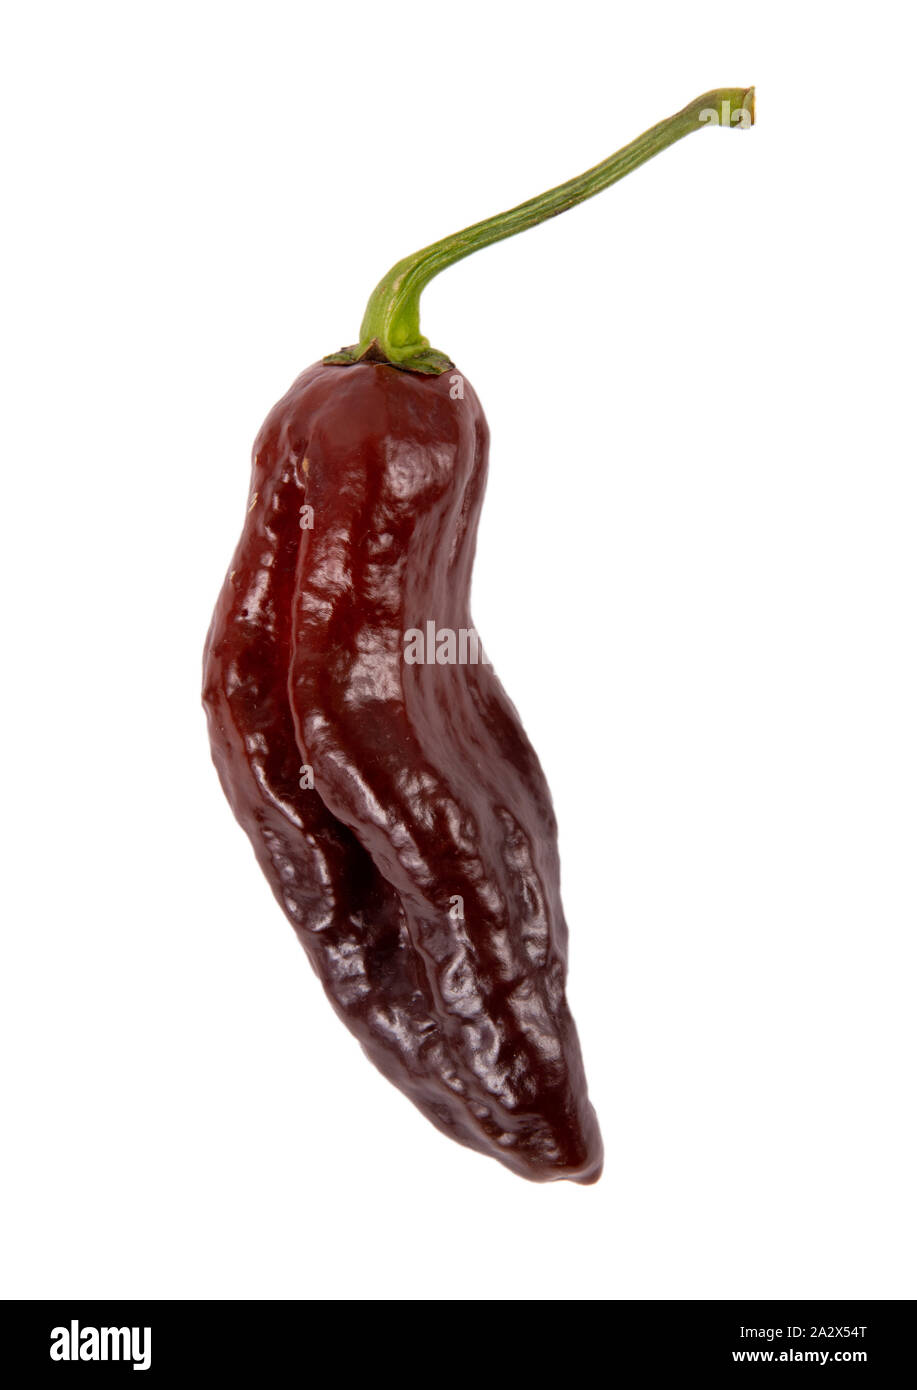 Chocolate bhut jolokia  hot pepper type isolated on white background Stock Photo